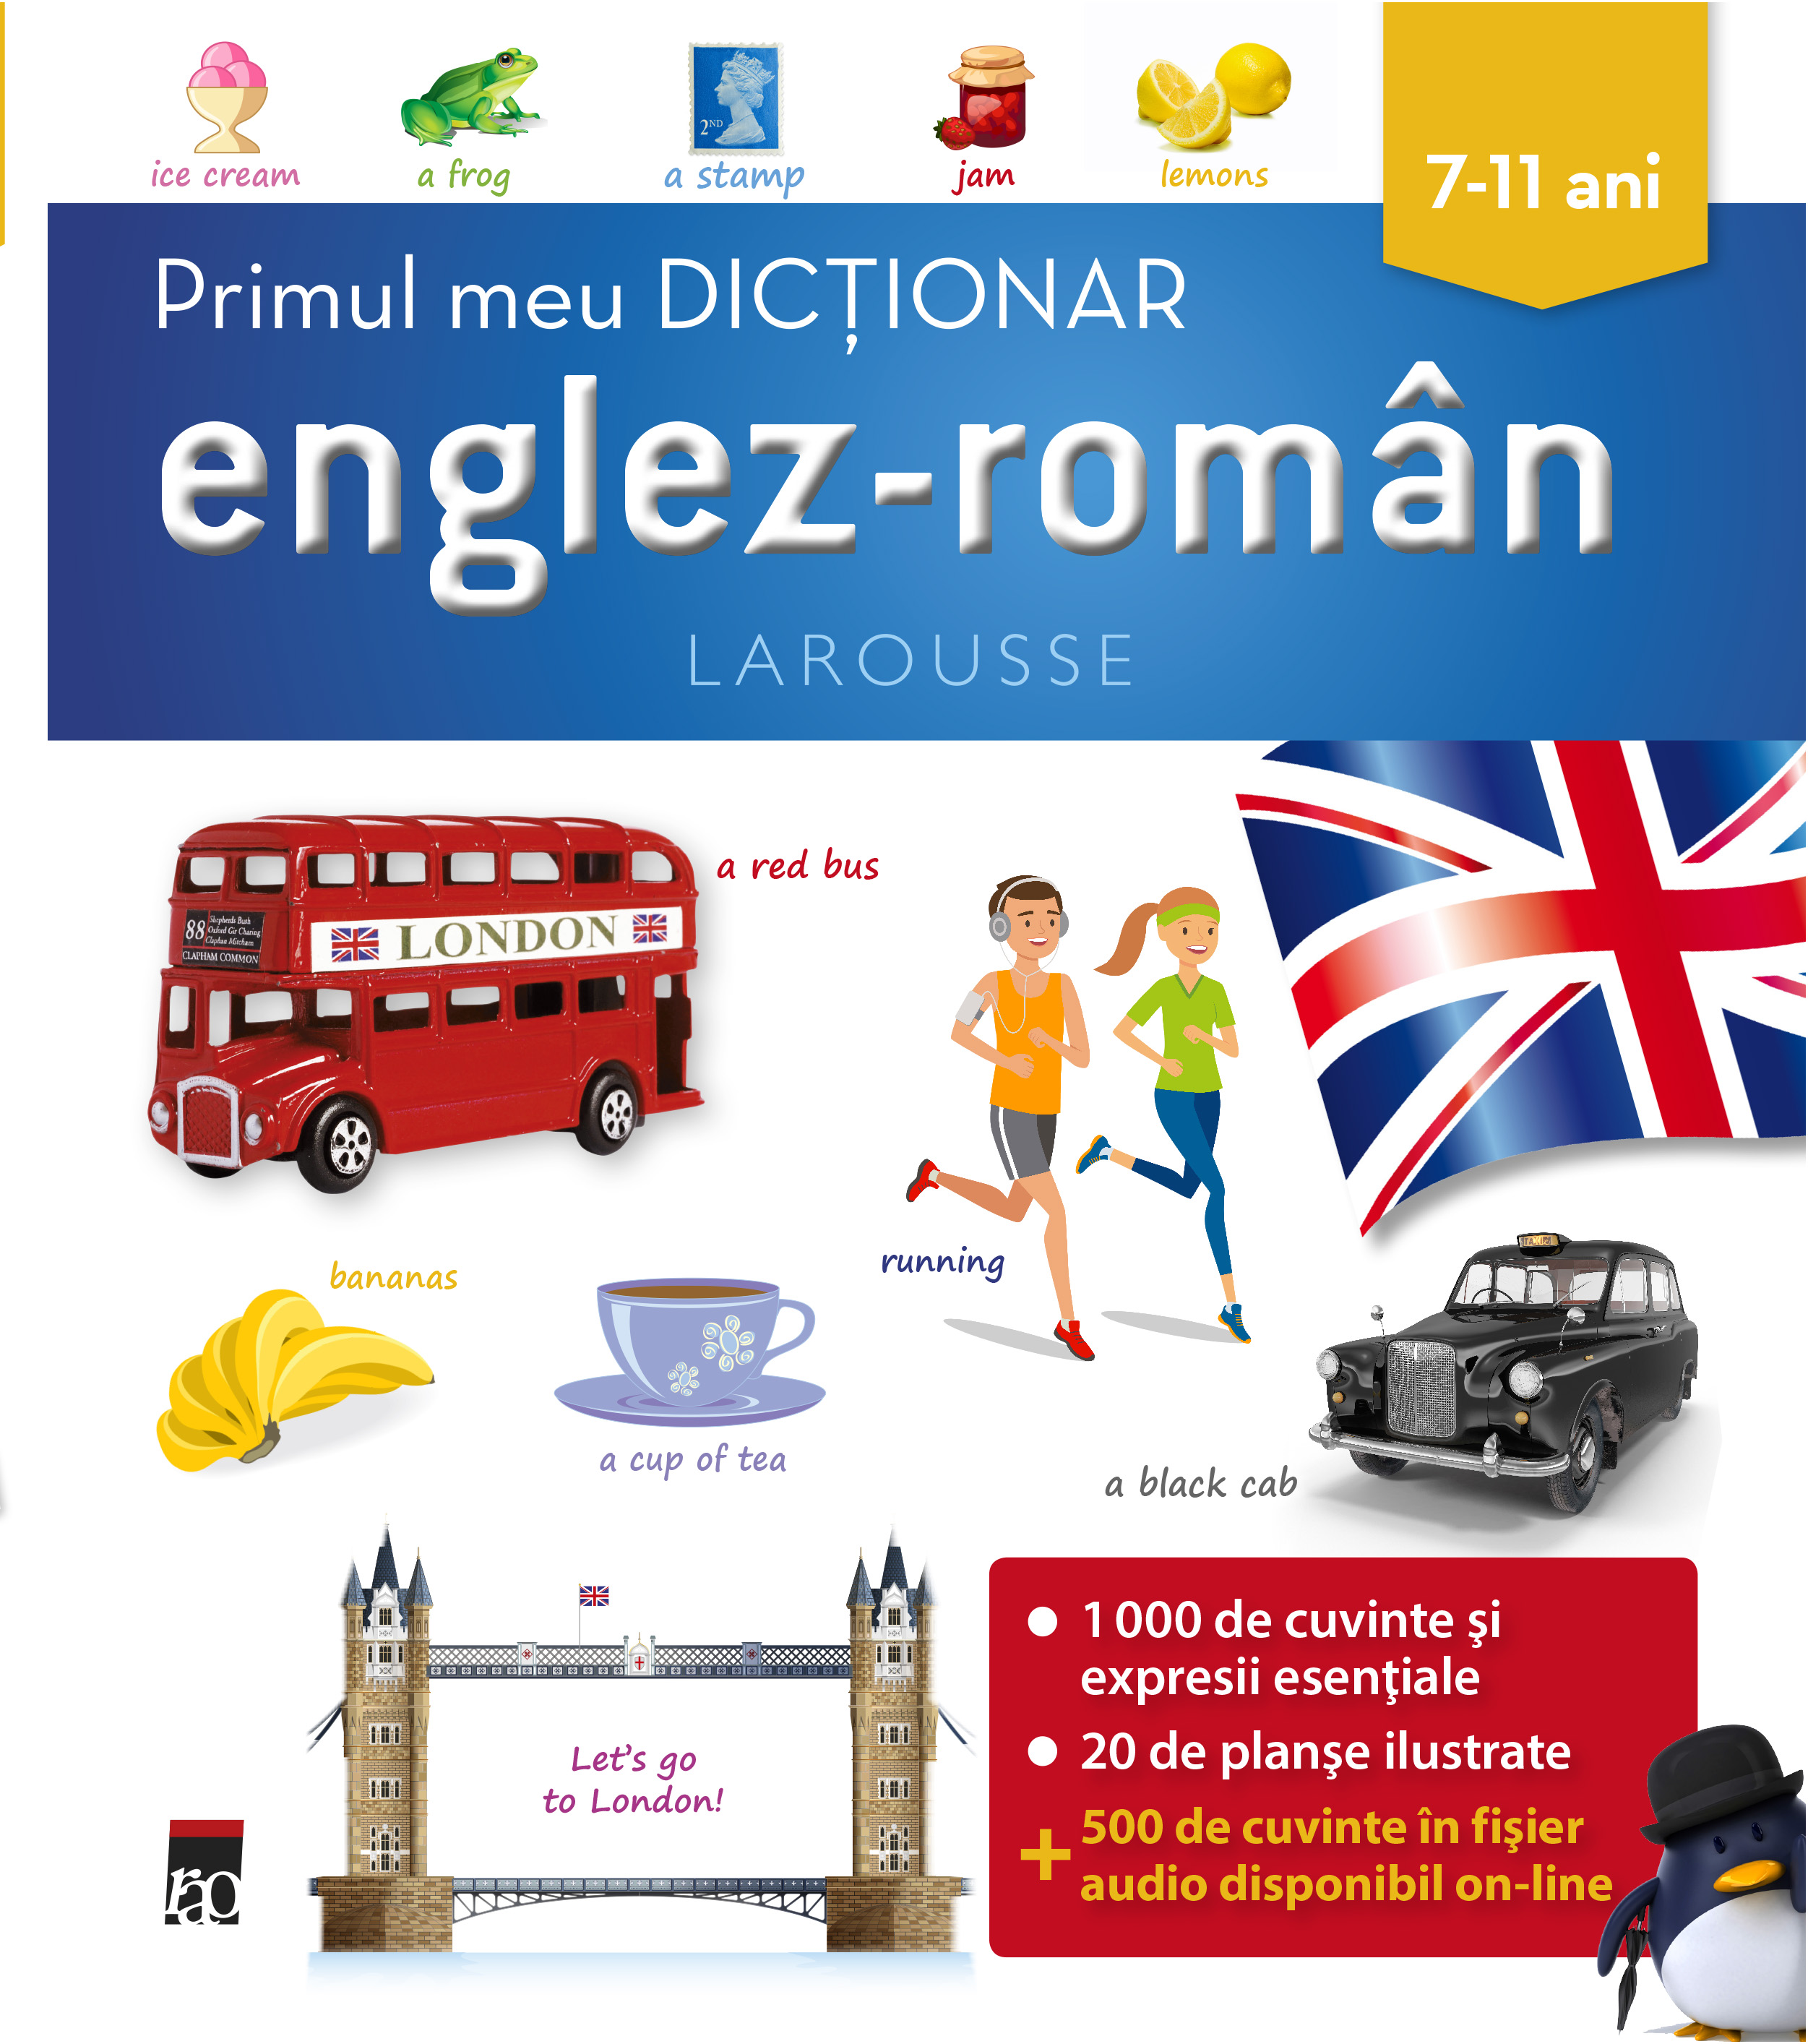 Primul meu dictionar englez – roman | Larousse carturesti.ro imagine 2022